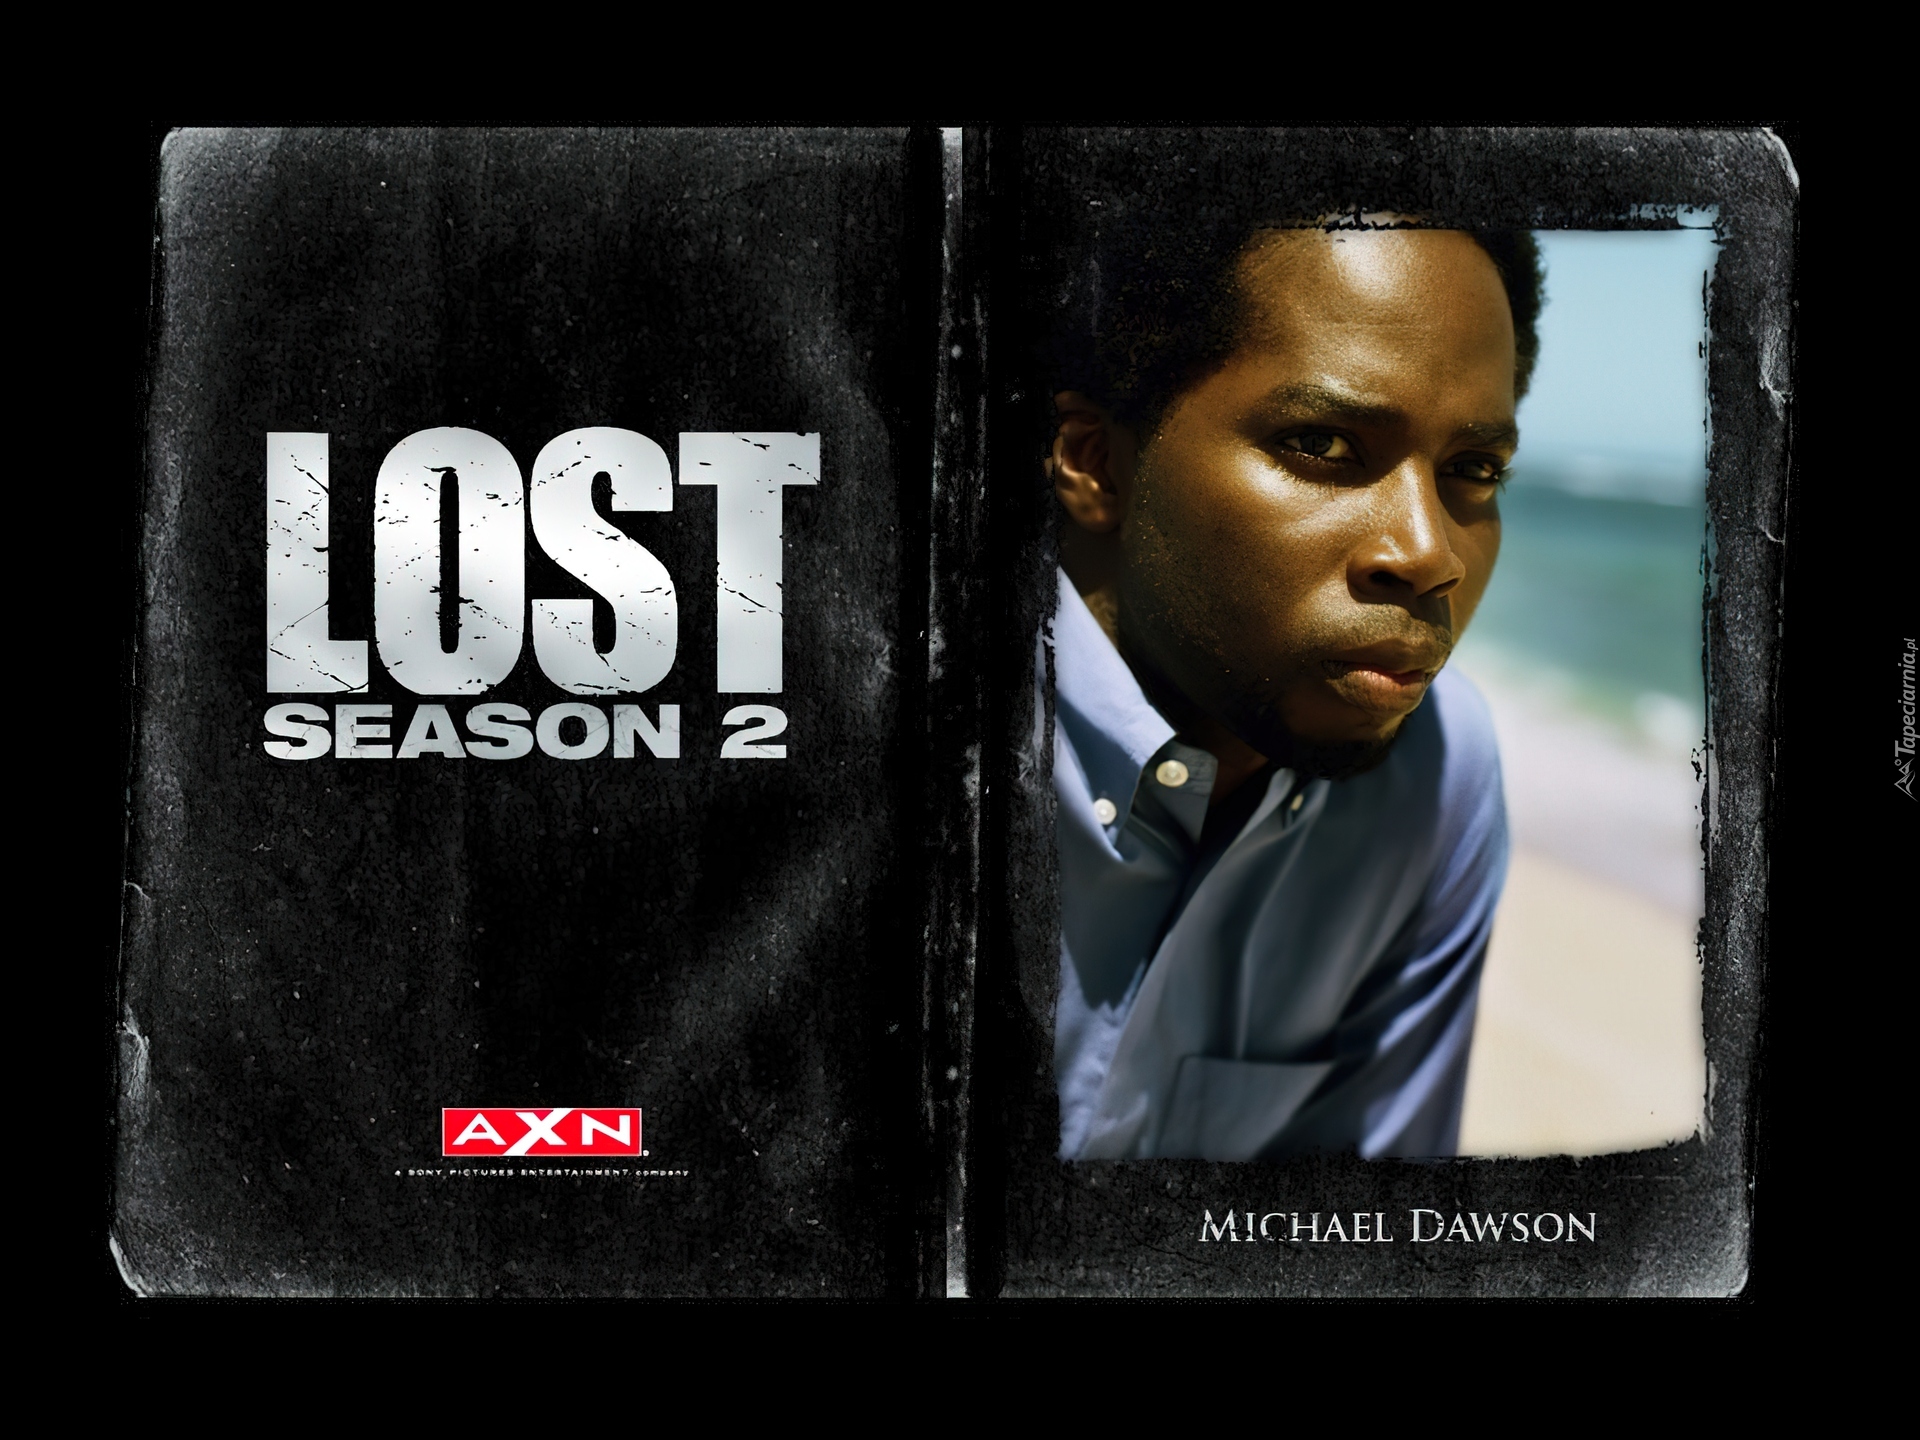 Serial, Lost, Harold Perrineau Jr., napis, zdjęcie